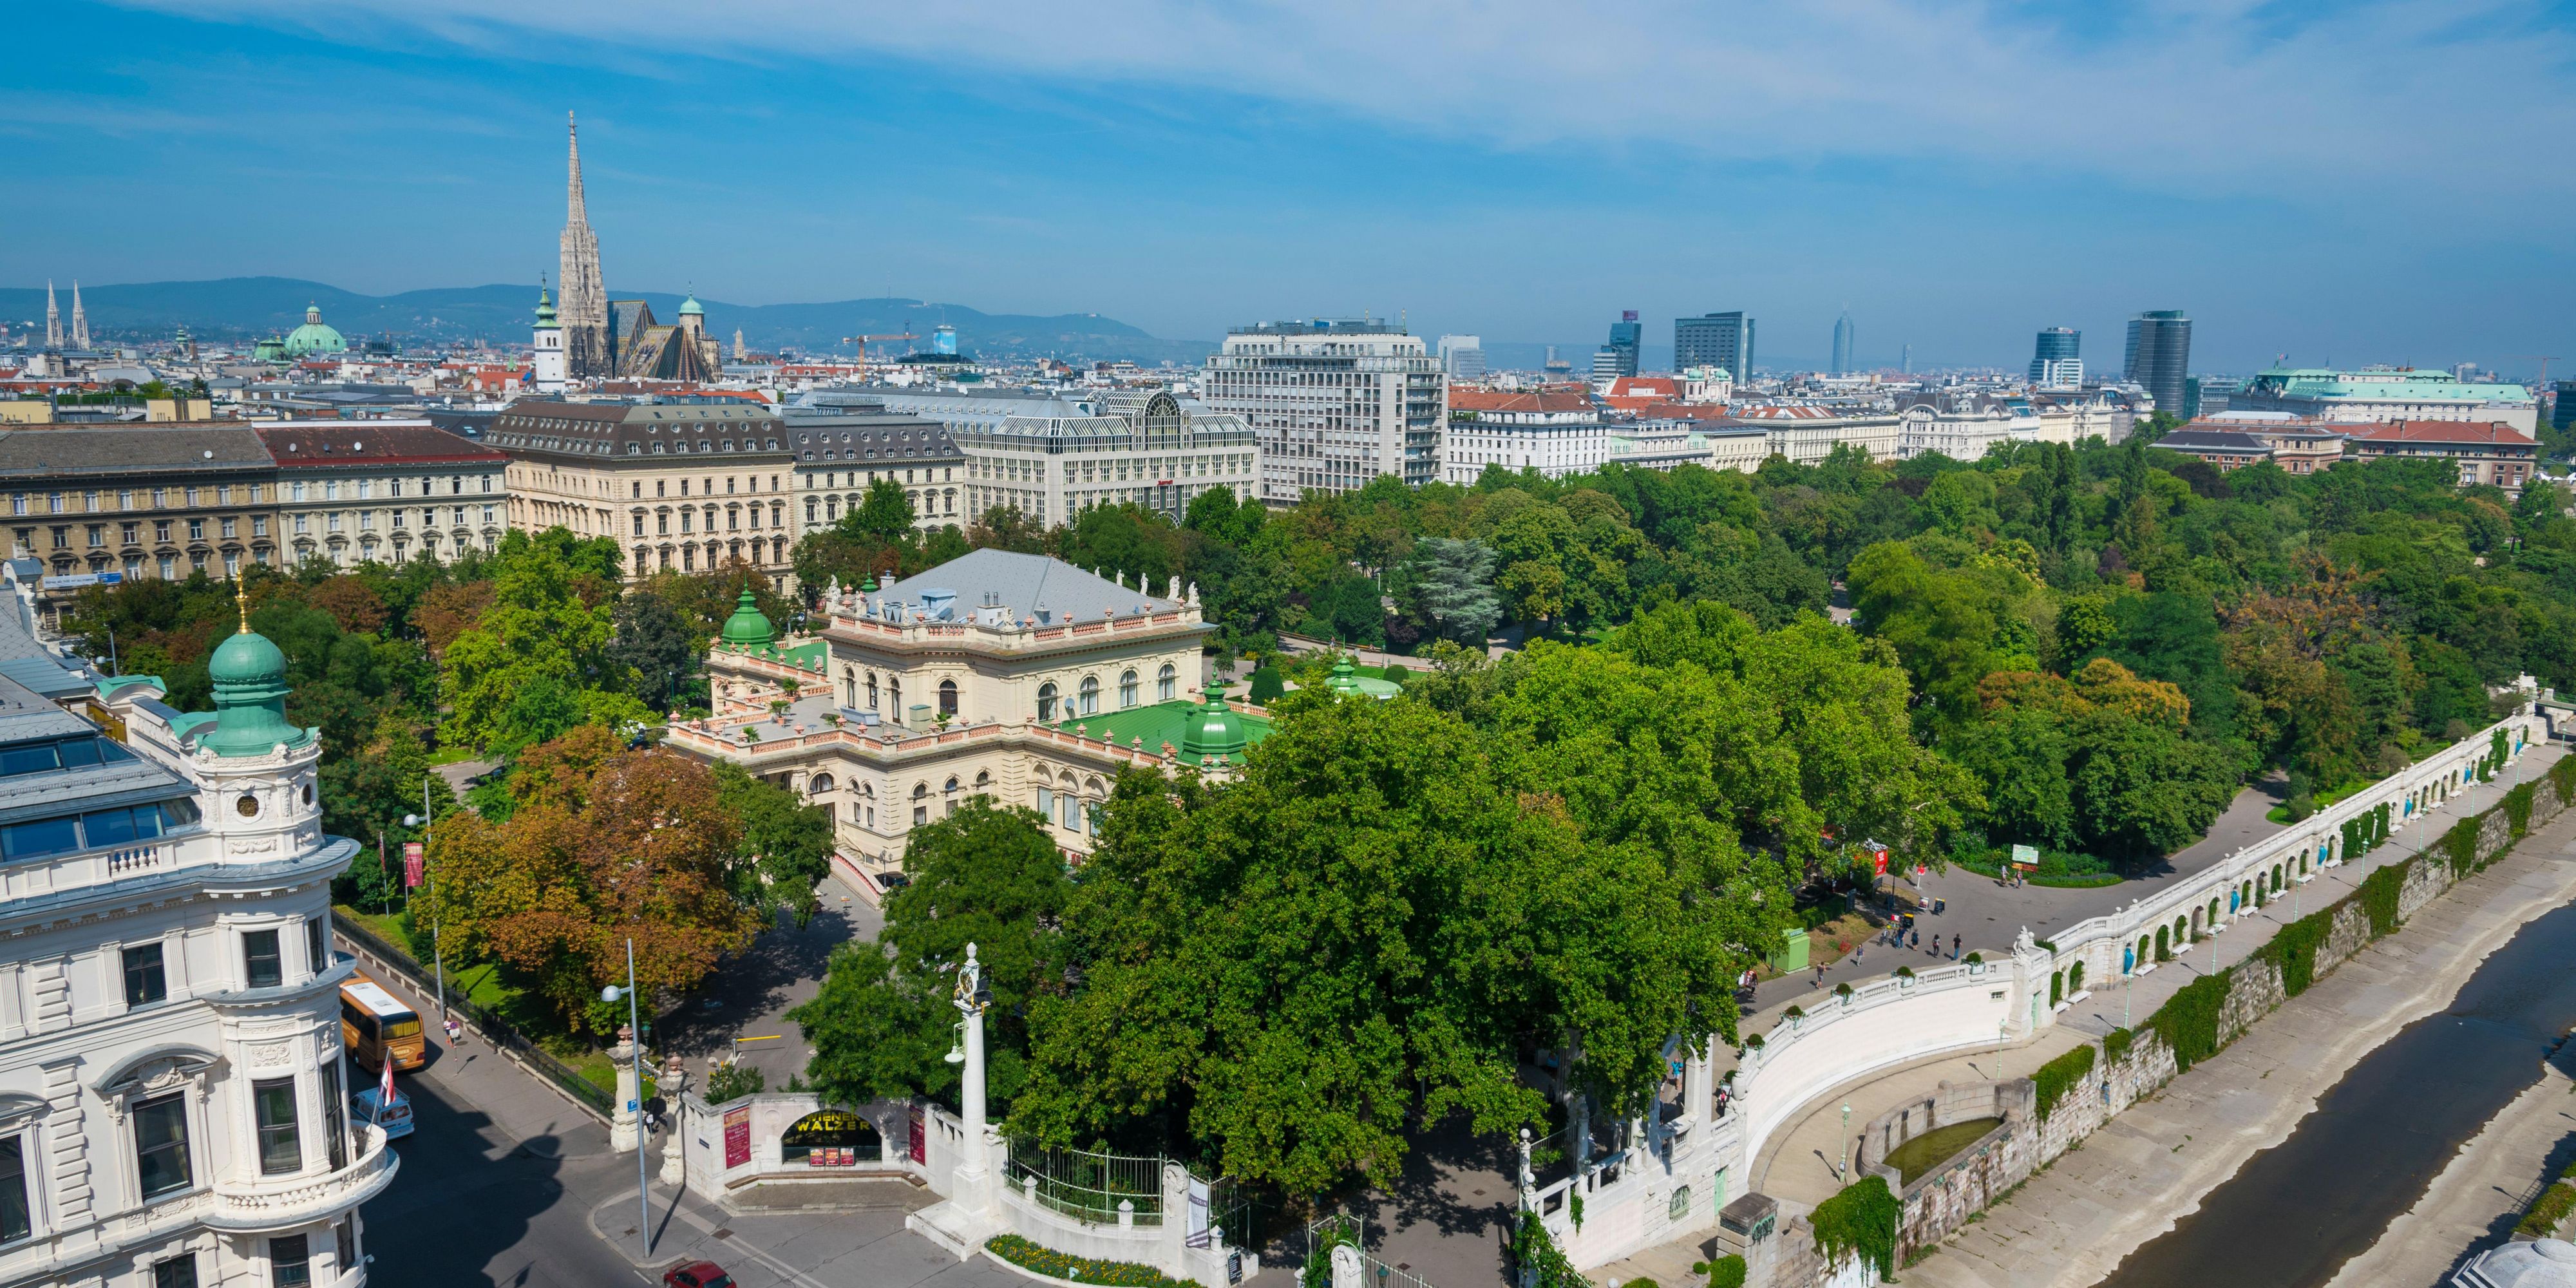 Der Stadtpark, der sich gegenüber dem Haupteingang des Hotels befindet, ist eine Oase der Ruhe und Entspannung direkt im Stadtzentrum. Der Stadtpark bietet sich auch für Spaziergänge oder sportliche Aktivitäten an. Sein goldenes Johann-Strauss-Denkmal ist eines der am häufigsten fotografierten Denkmäler der Welt.